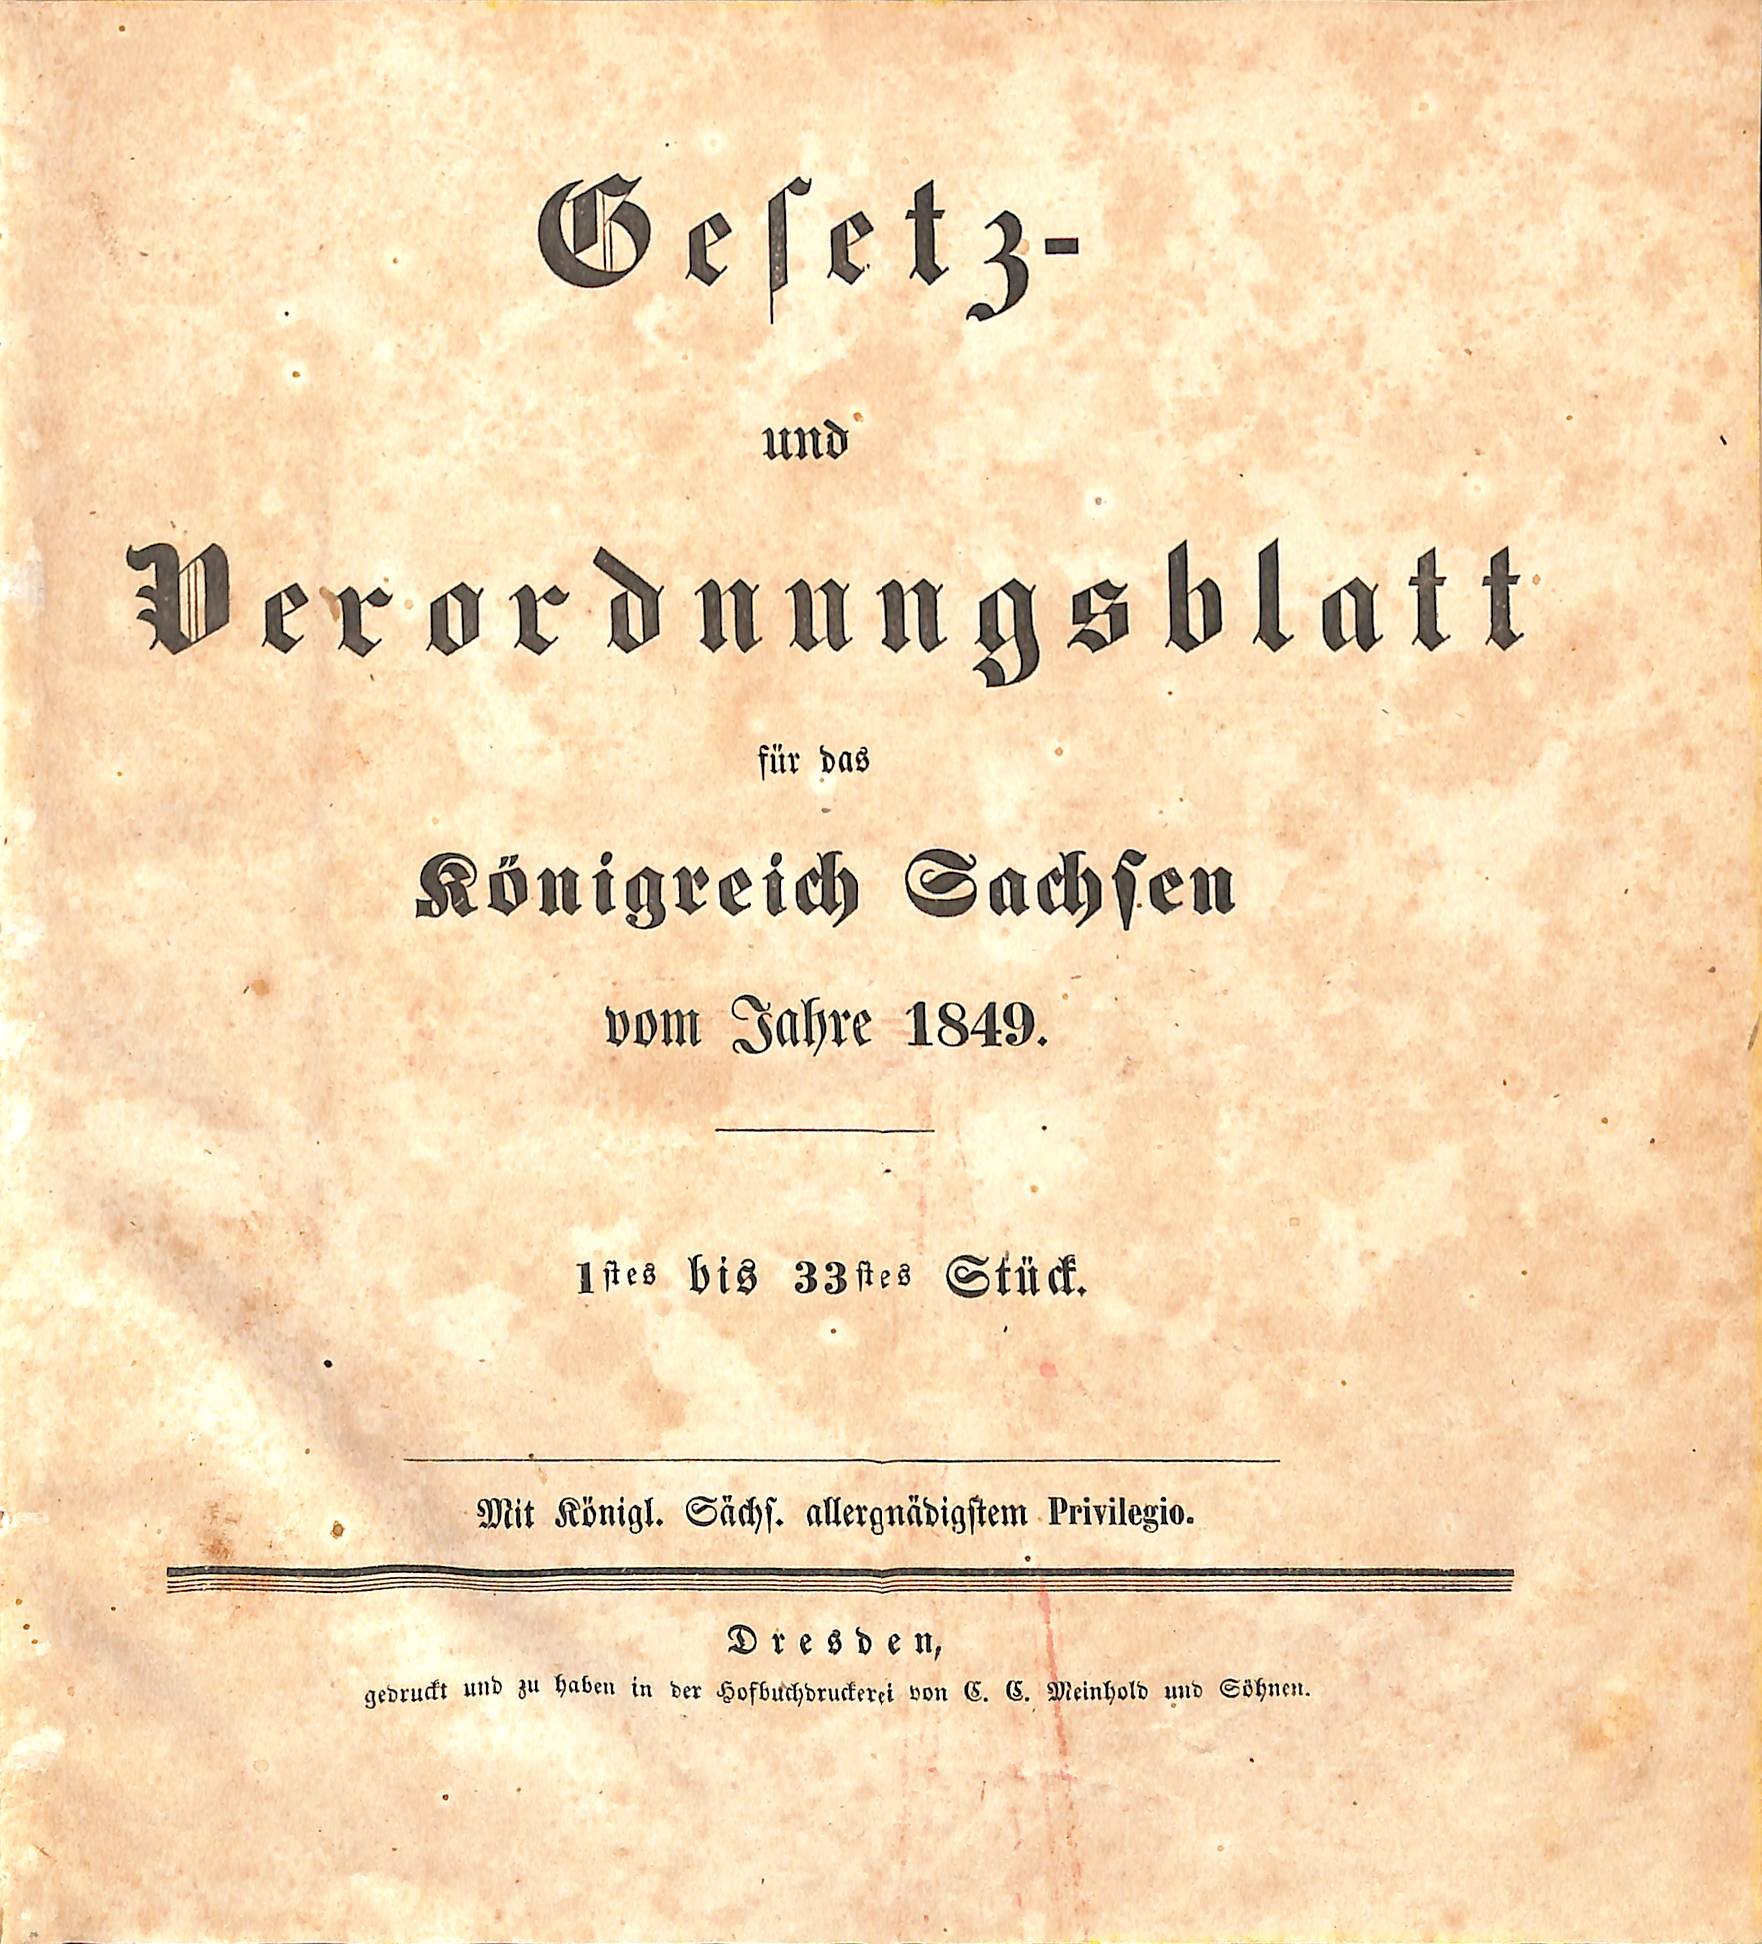 Gesetz- und Verordnungsblatt für das Königreich Sachsen vom Jahre 1849 (HEIMATWELTEN Zwönitz - Raritätensammlung Bruno Gebhardt CC BY-NC-SA)